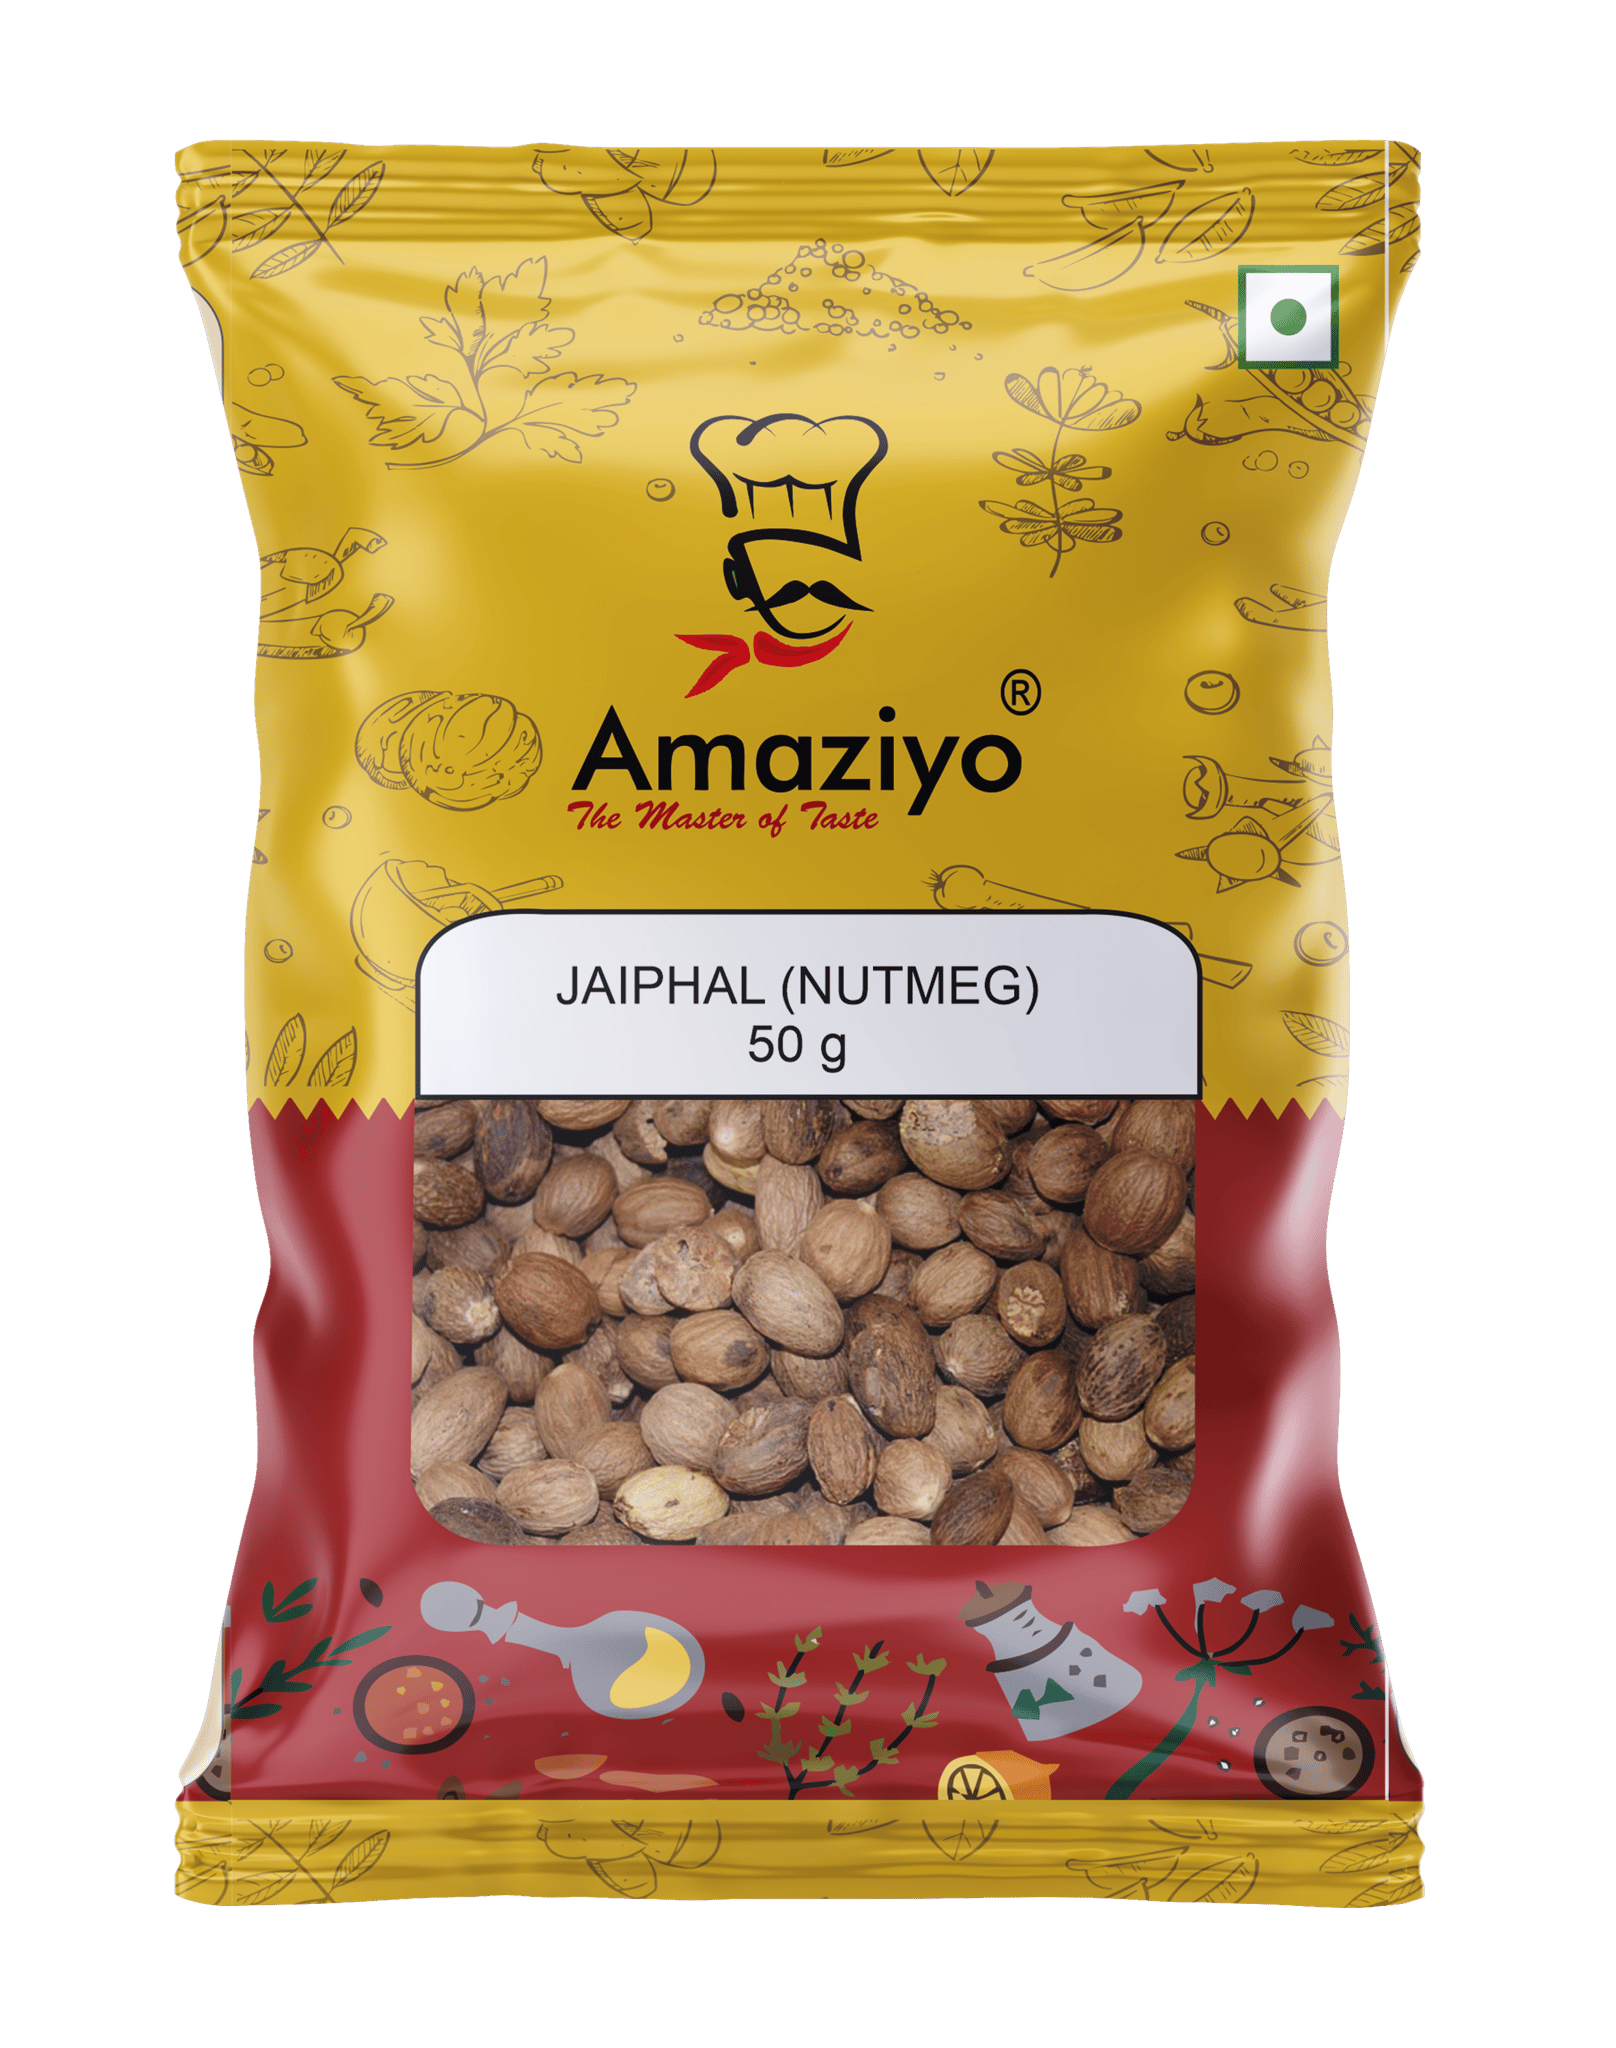 Amaziyo Jaiphal Whole 50g | Nutmeg Whole